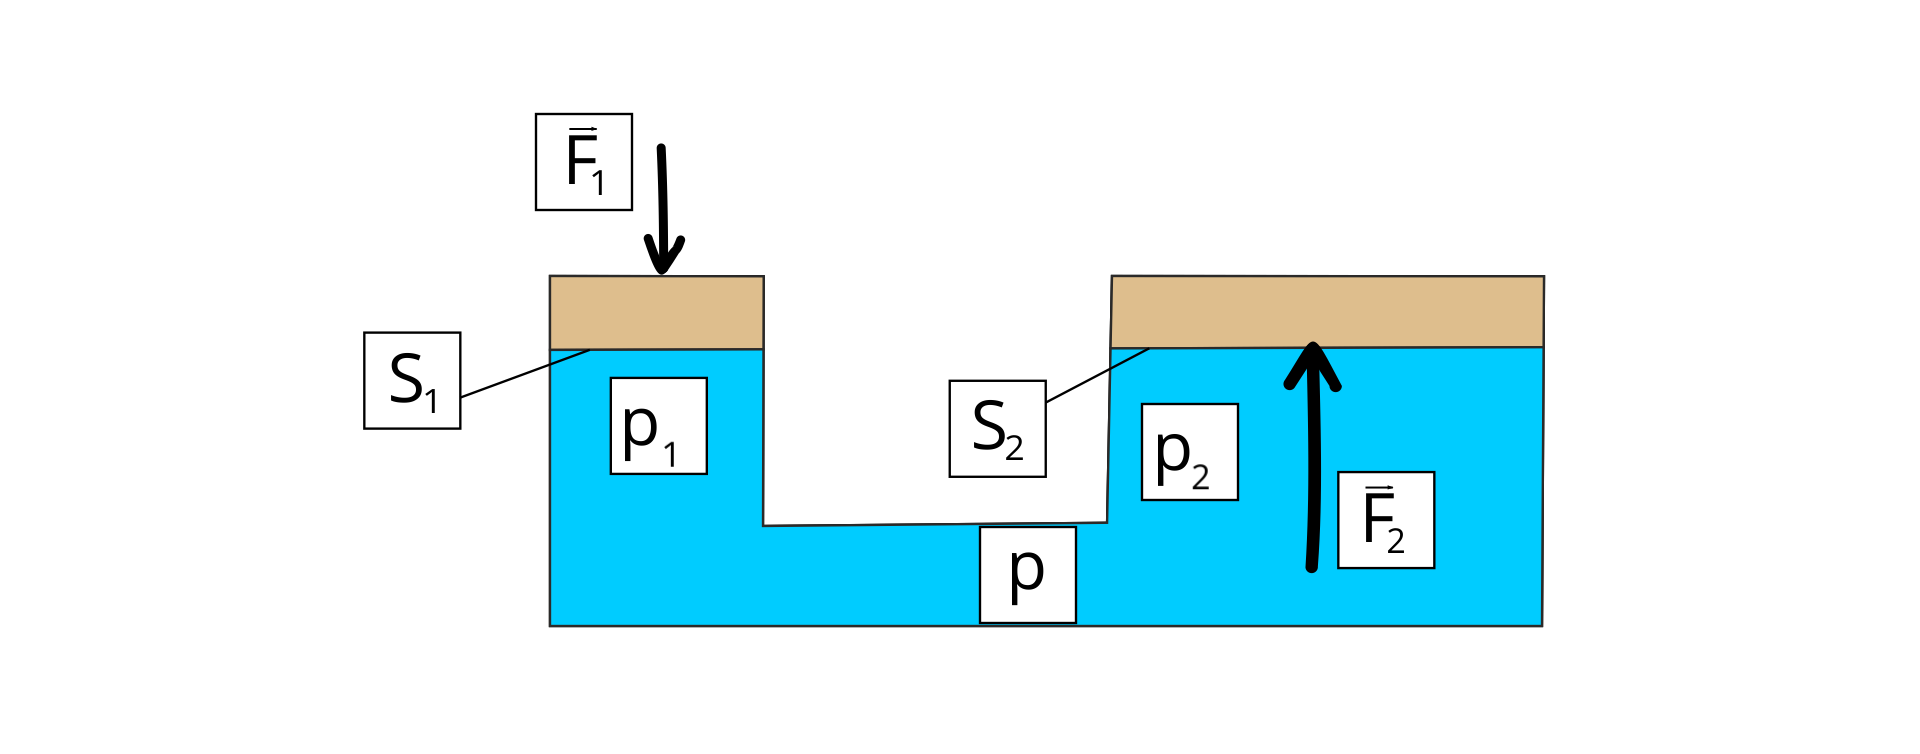 Rysunek przedstawia dwa wyższe prostokąty połączone ze sobą trzecim niskim prostokątem opisanym p. Prostokąt po lewej jest węższy opisany p z indeksem dolnym 1, na nim niski prostokąt tej samej szerokości. Styczny bok prostokątów opisany S z indeksem dolnym 1. Nad nimi strzałka pionowa w dół opisana F z indeksem dolnym 1. Prostokąt po prawej jest szerszy opisany p z indeksem dolnym 2, na nim niski prostokąt tej samej szerokości. Styczny bok prostokątów opisany S z indeksem dolnym 2. Pod nim strzałka pionowa w górę opisana F z indeksem dolnym 2. Nad literami F strzałki poziome skierowane w prawo.